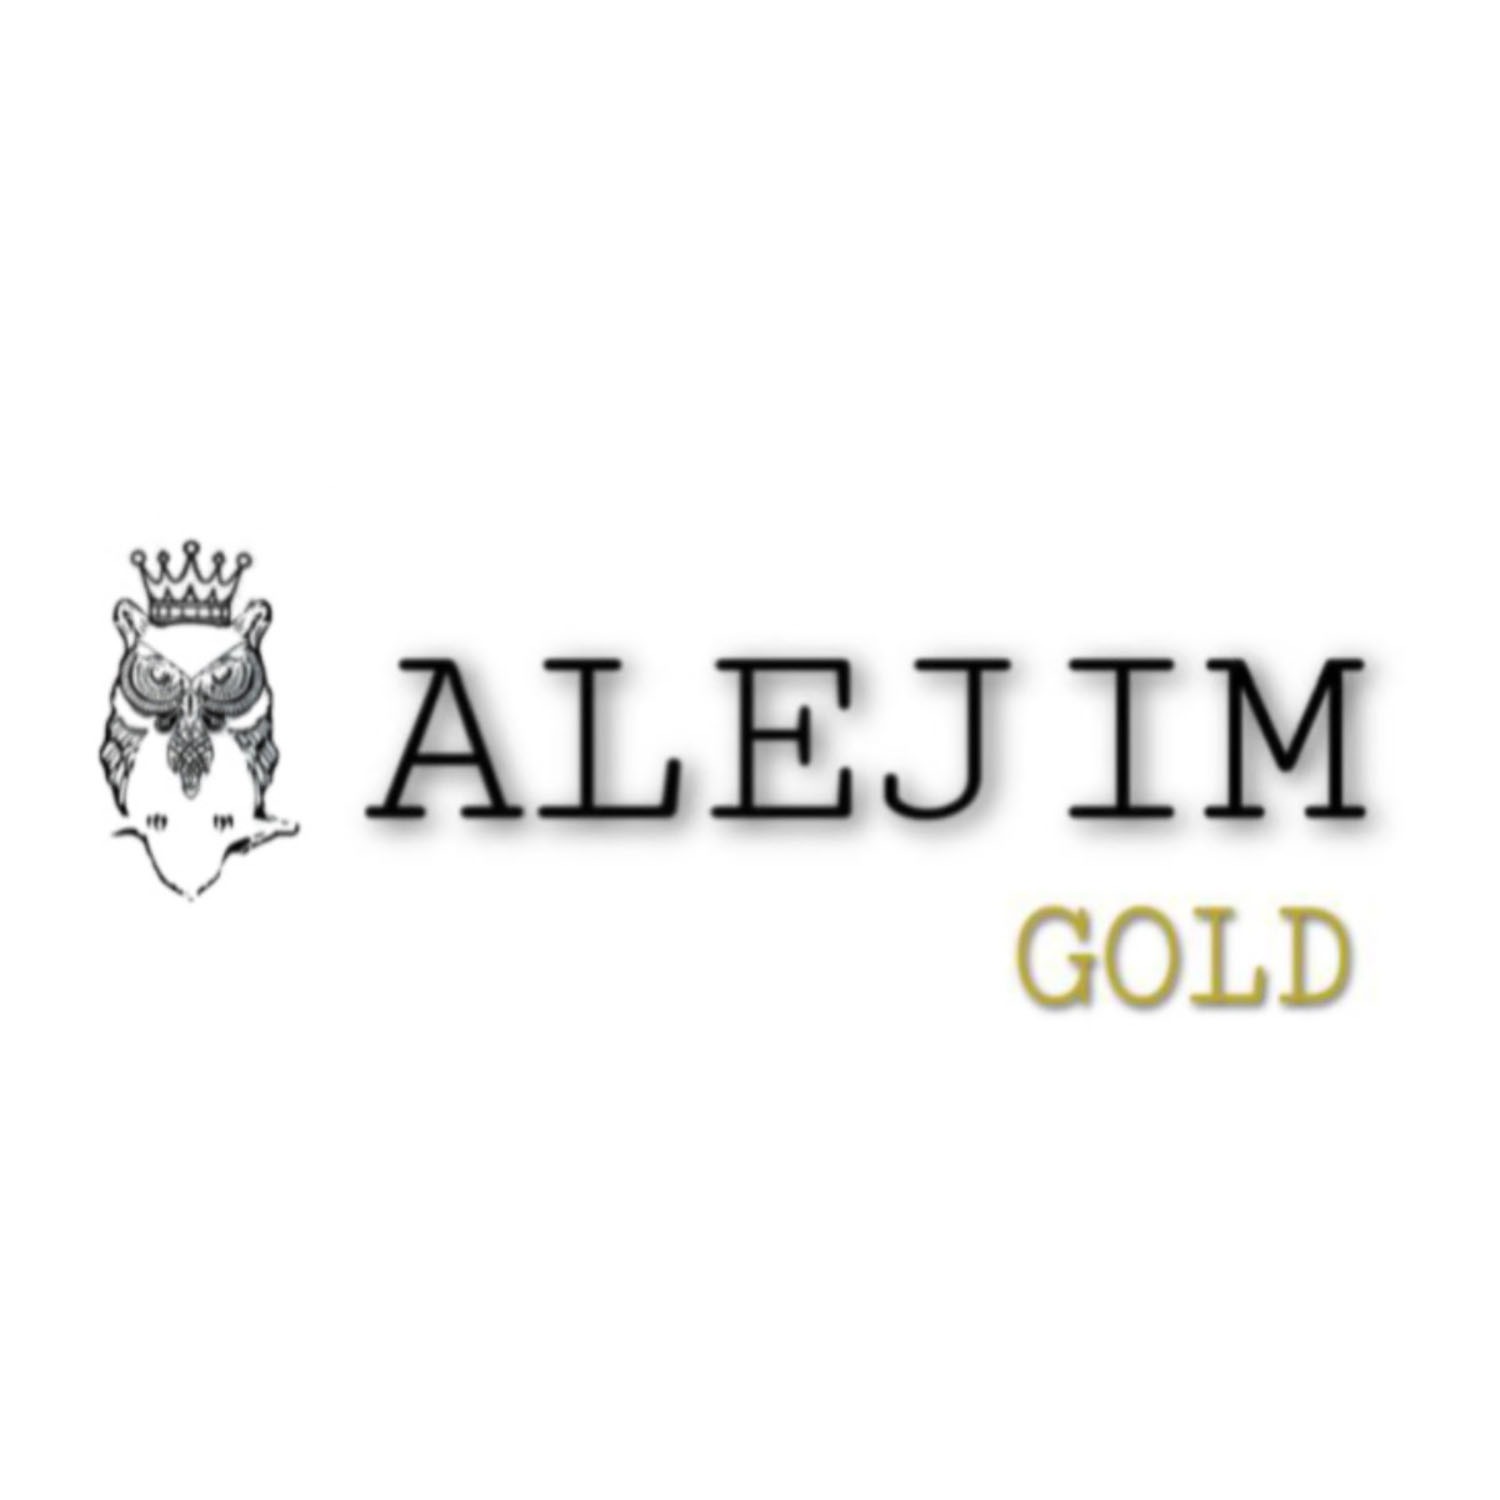 ALEJIM GOLD